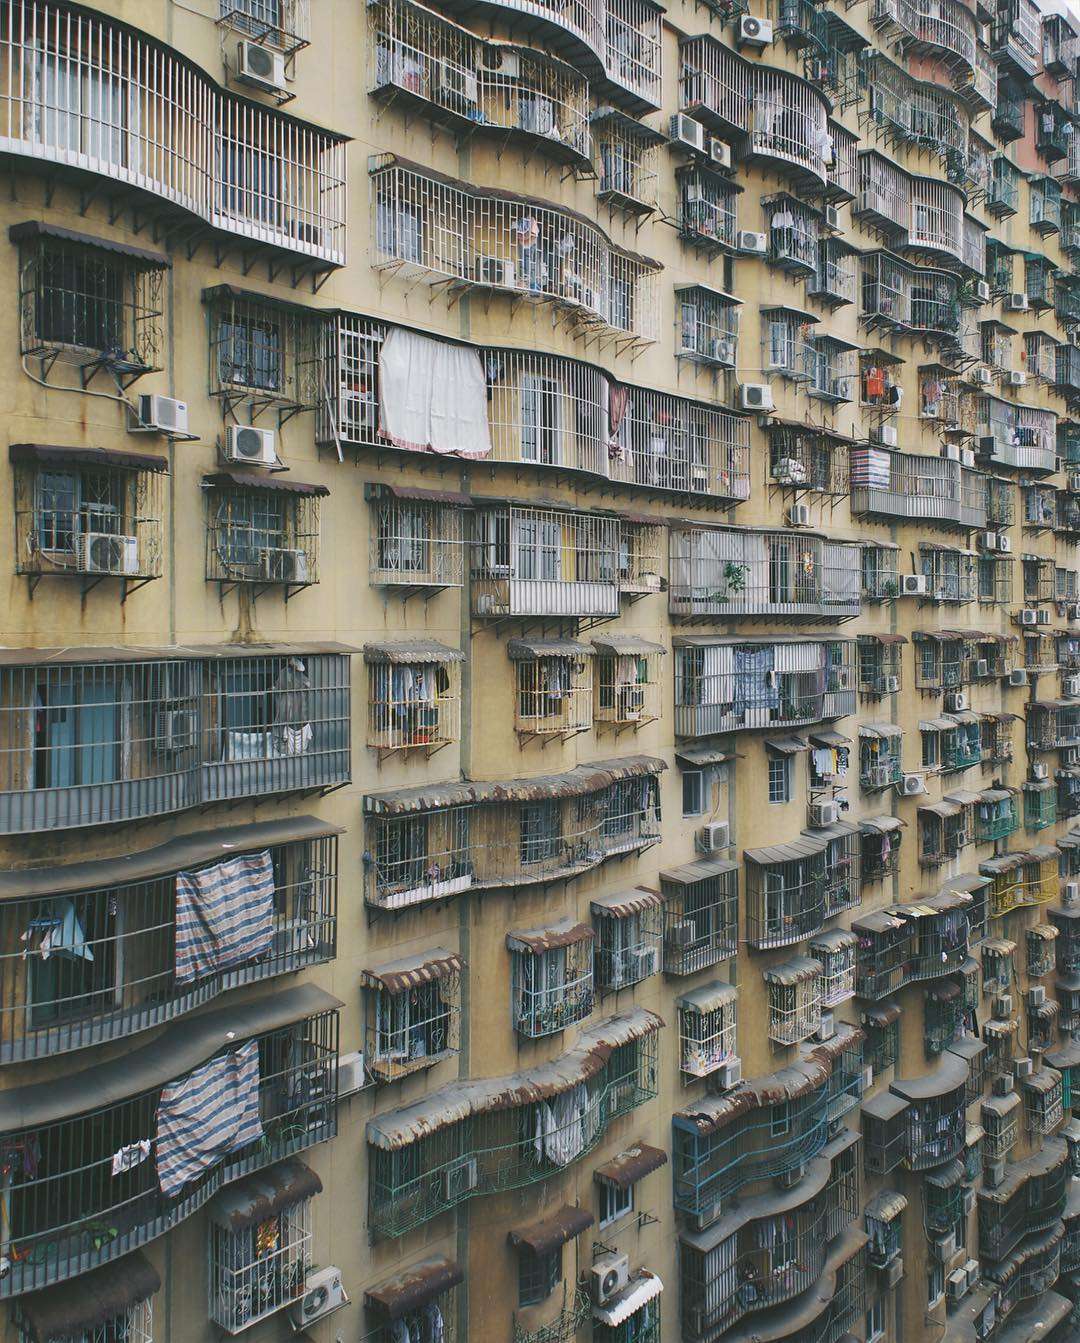 Shot of residential buildings in Macau